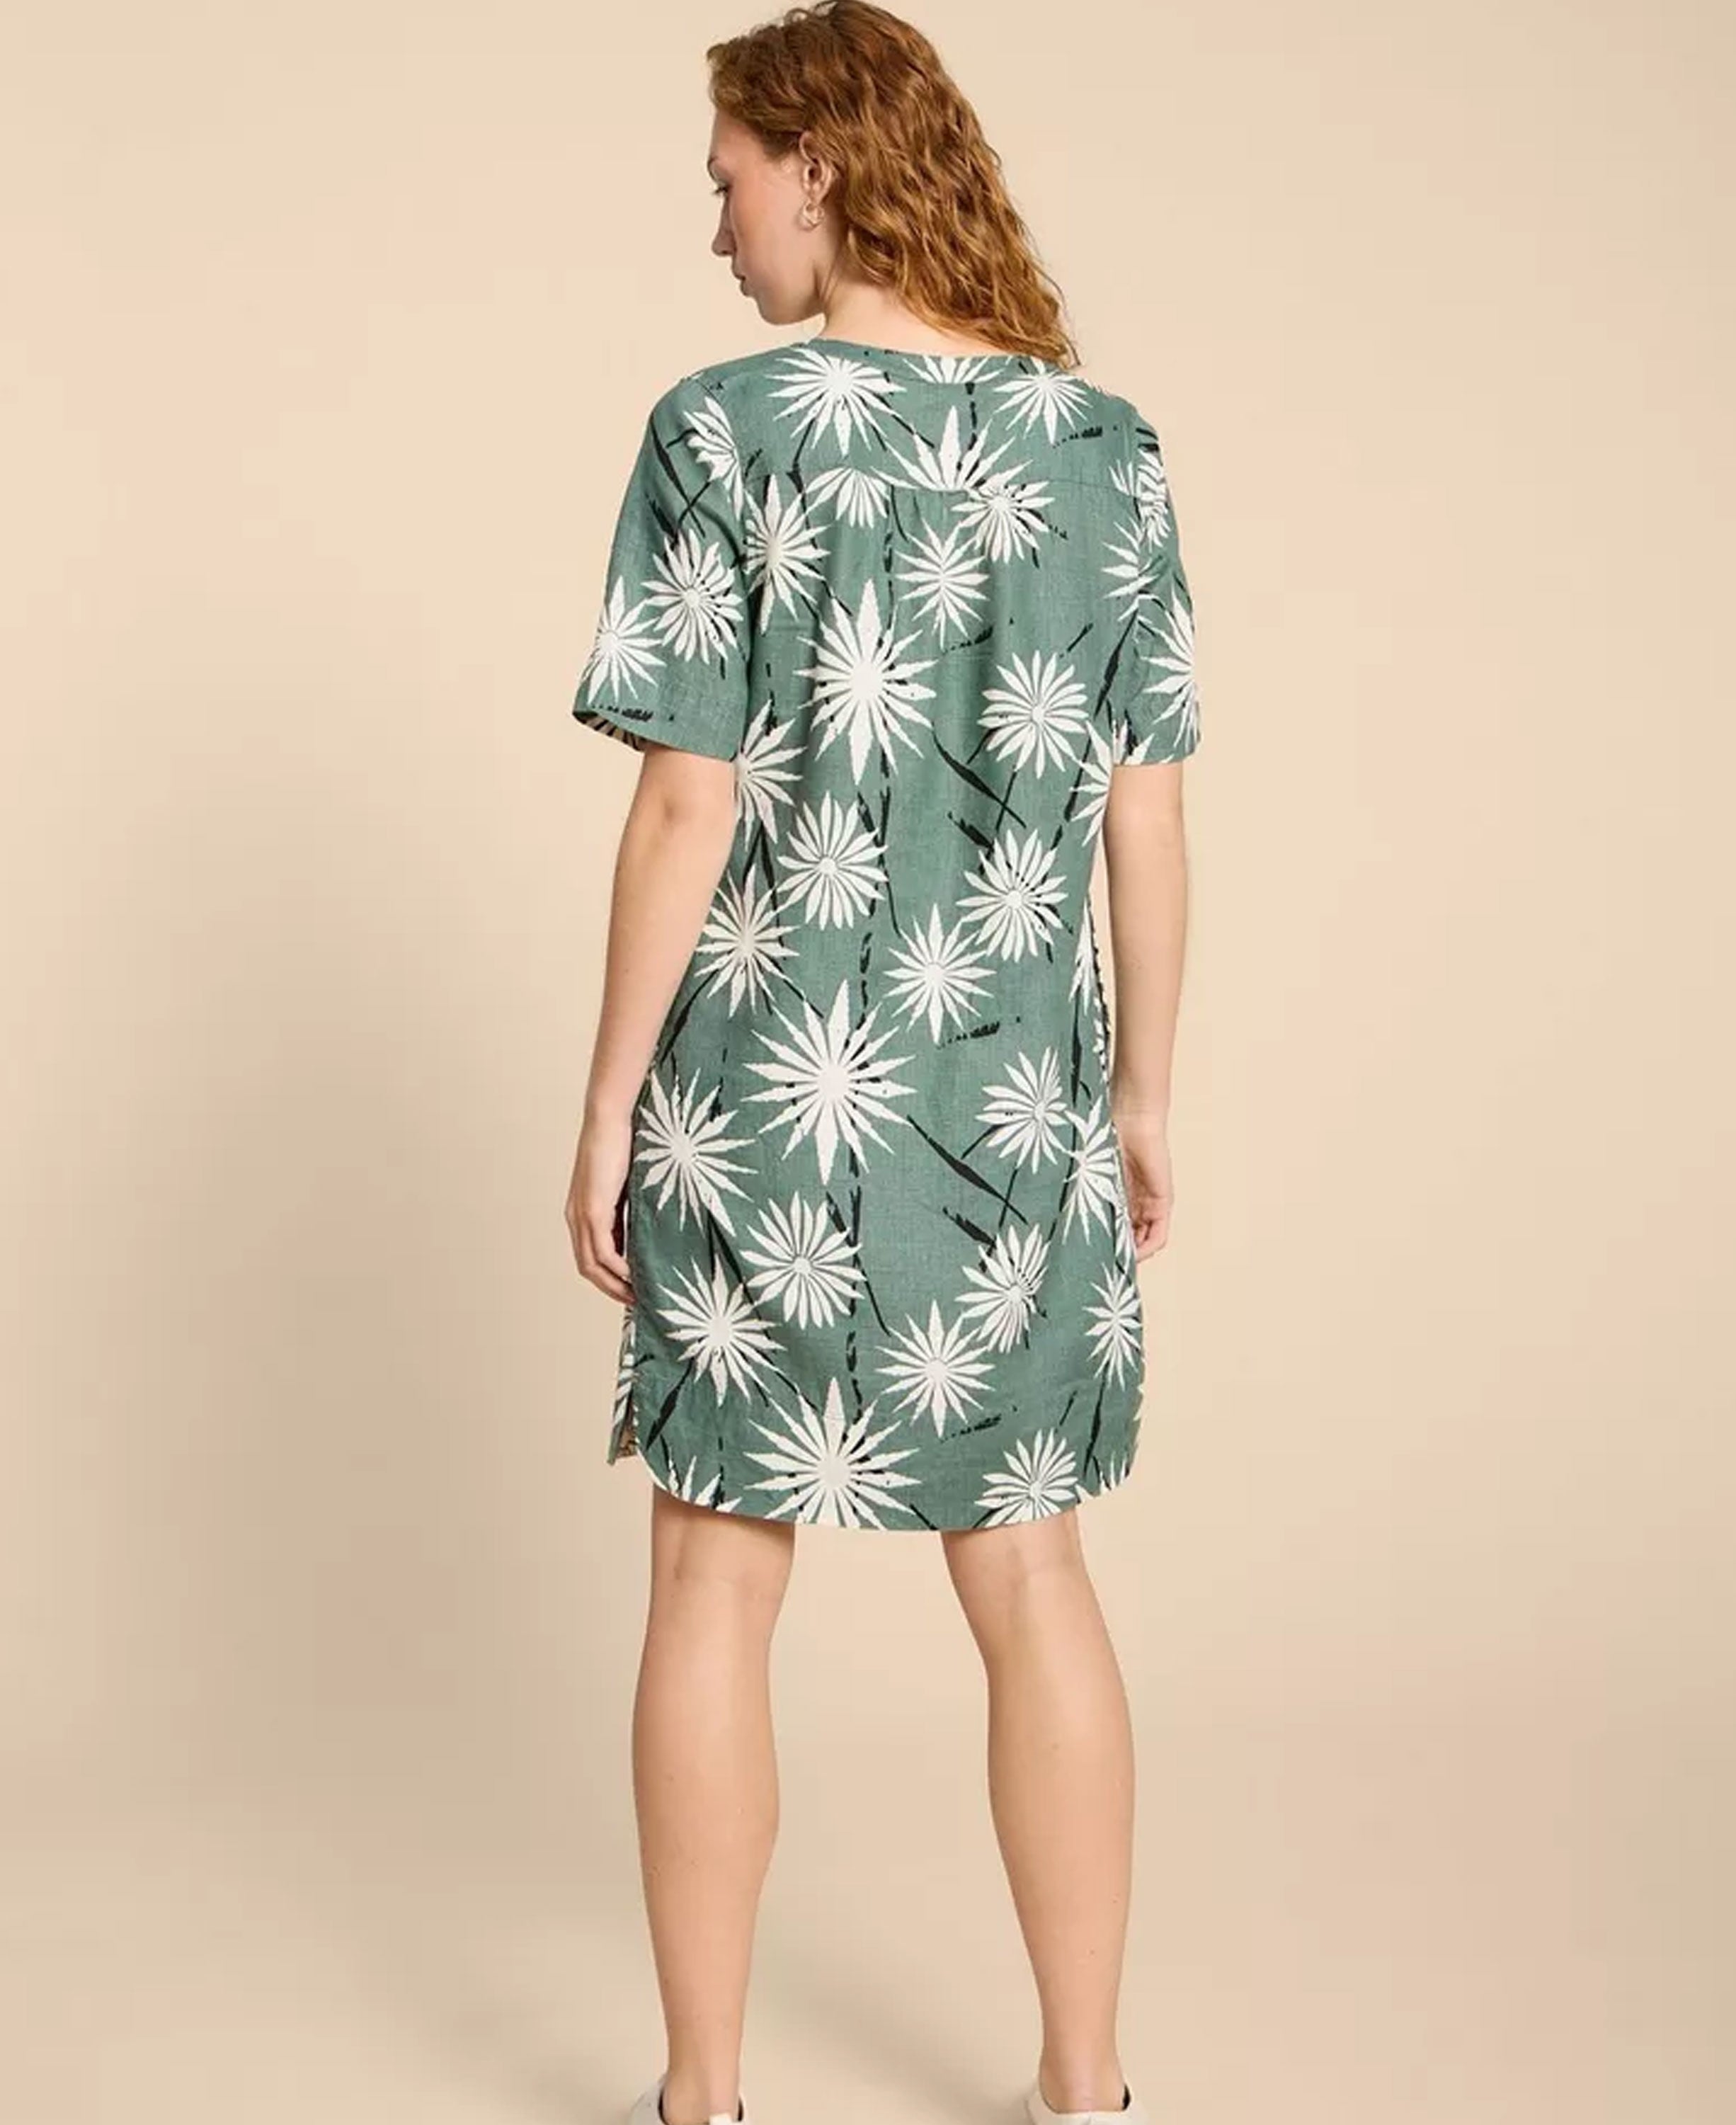 June Linen Shift Dress - Green Print